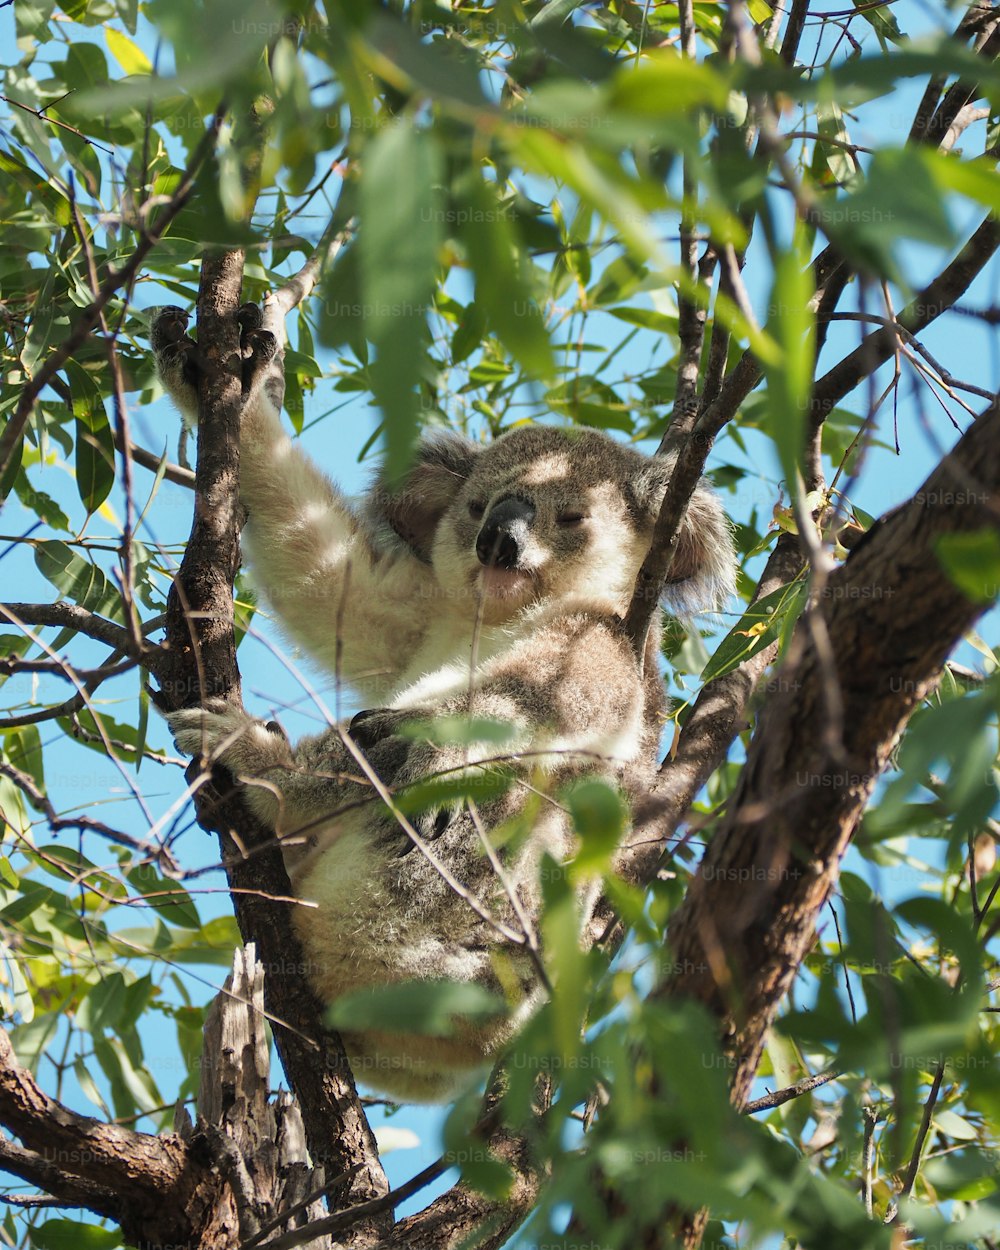 Un koala est assis dans un arbre et regarde la caméra